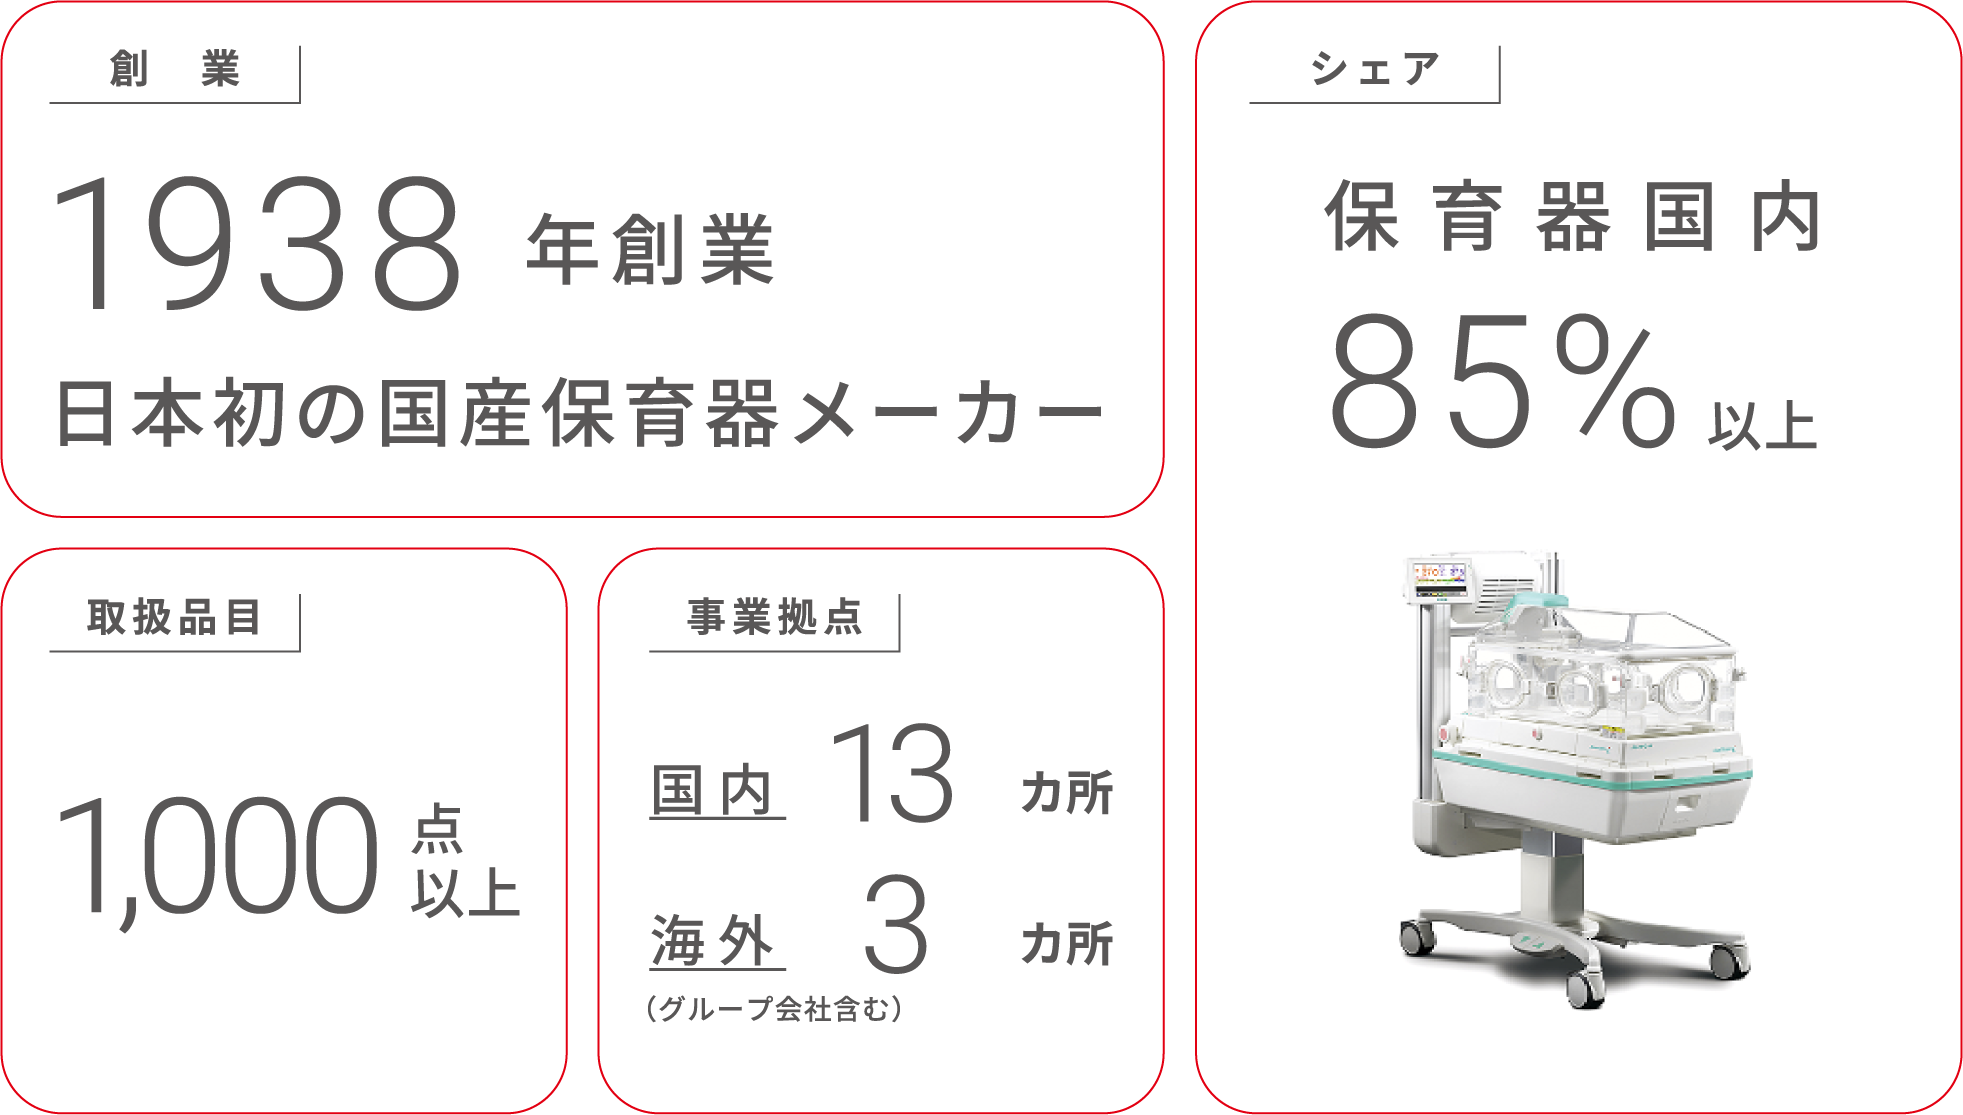 シェア　保育器国内85%以上　創業　1938年創業 日本初の国産保育器メーカー　取扱品目　1,000点以上　事業拠点　国内13ヵ所　海外3ヵ所